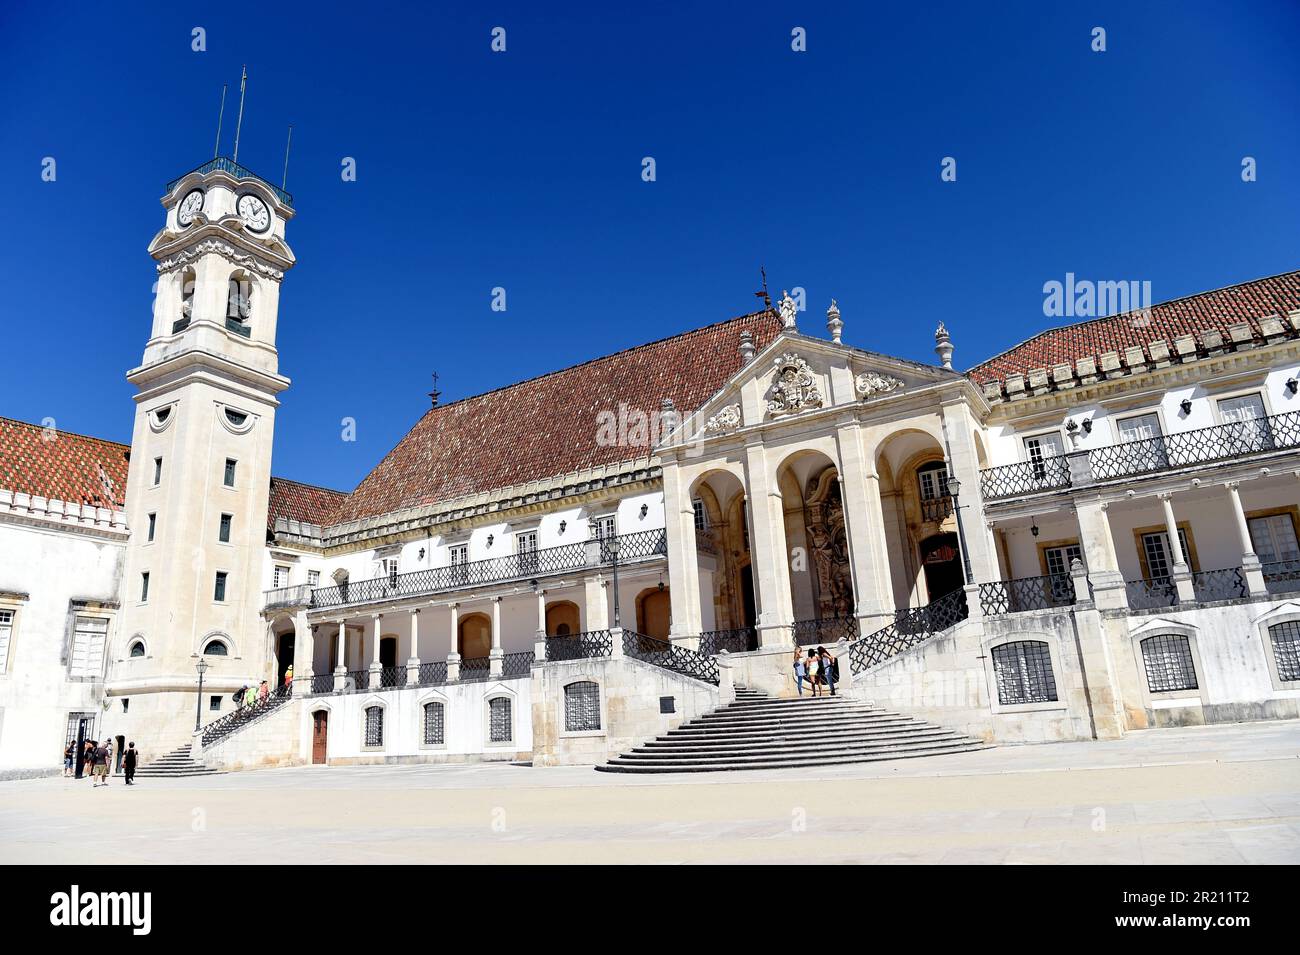 Photographie montrant l'extérieur de l'Université de Coimbra, Coimbra, Portugal. Une université publique portugaise à Coimbra, elle a été créée en 1290 à Lisbonne et a été réinstallée jusqu'à ce qu'elle soit transférée de façon permanente à son emplacement actuel en 1537. Banque D'Images